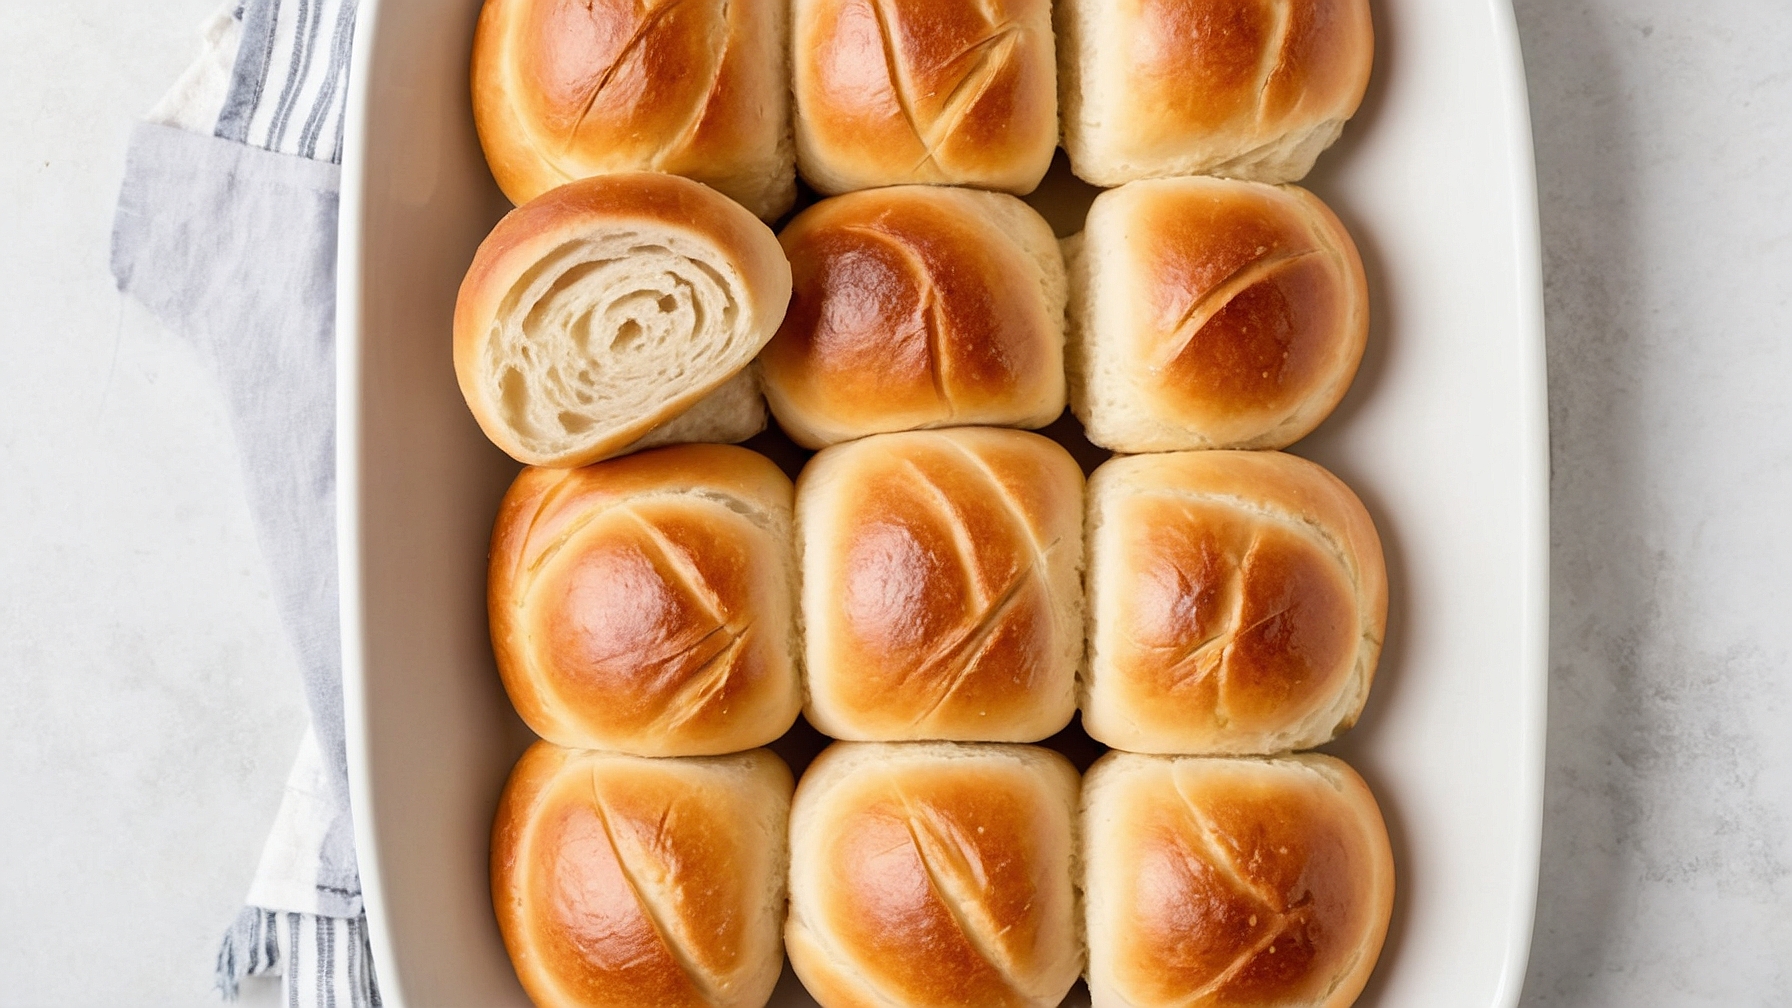 Freshly baked sourdough rolls on a wooden board